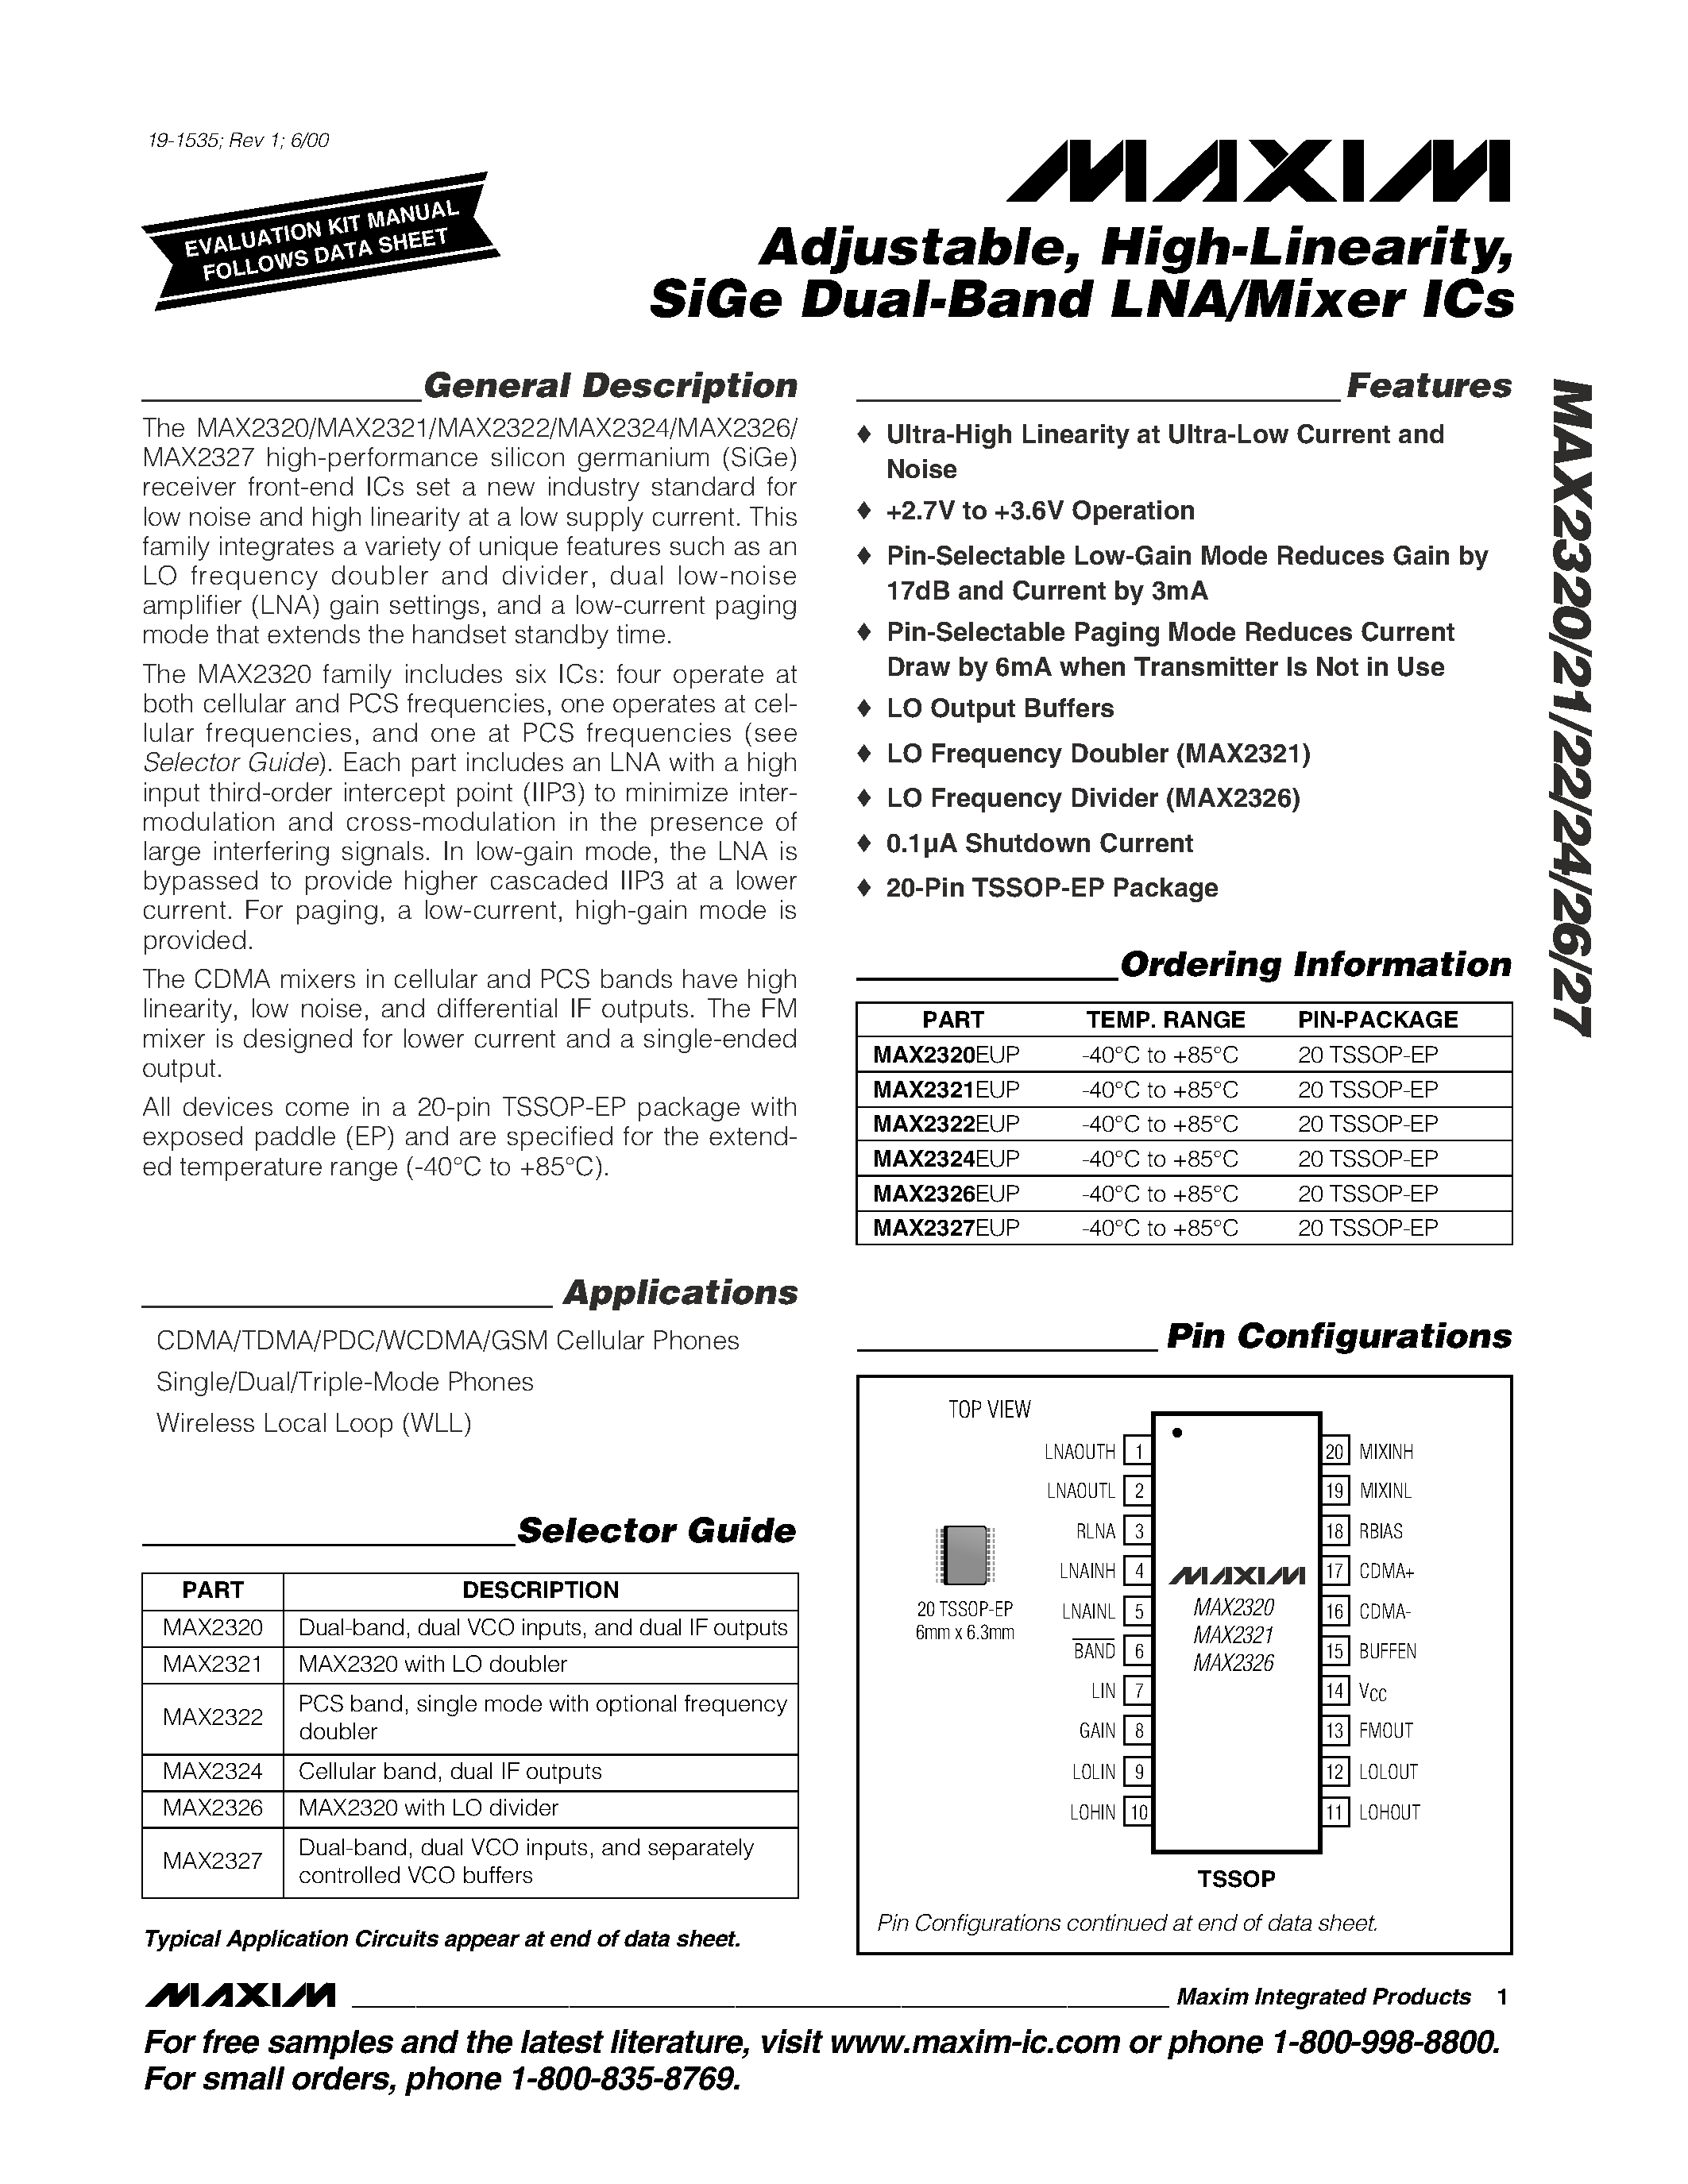 Даташит MAX2327 - Adjustable / High-Linearity / SiGe Dual-Band LNA/Mixer ICs страница 1